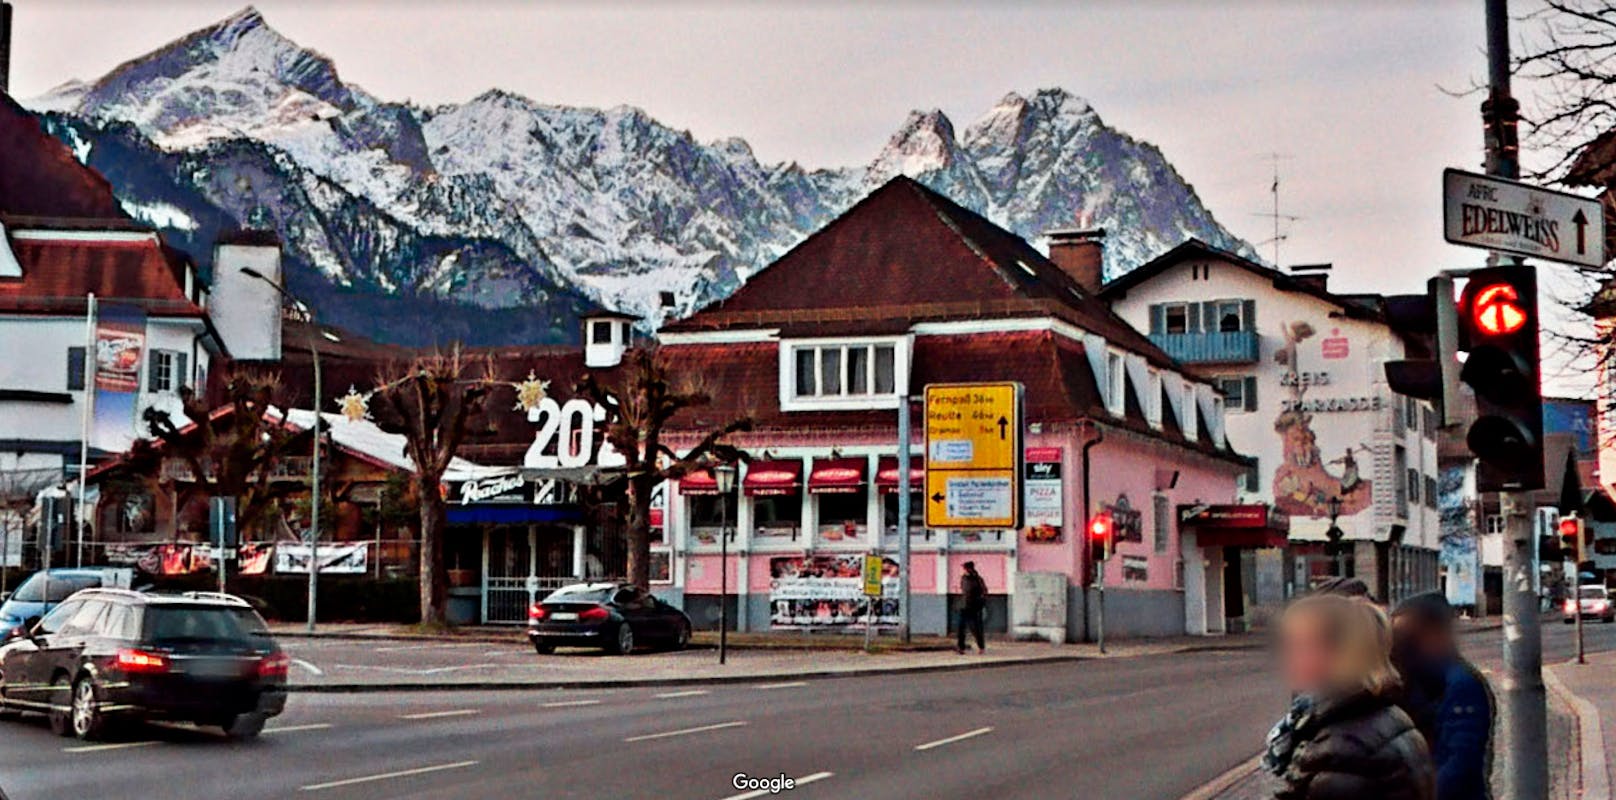 Blick auf den Marienplatz und die Cocktailbar "Peaches" in Garmisch-Partenkirchen